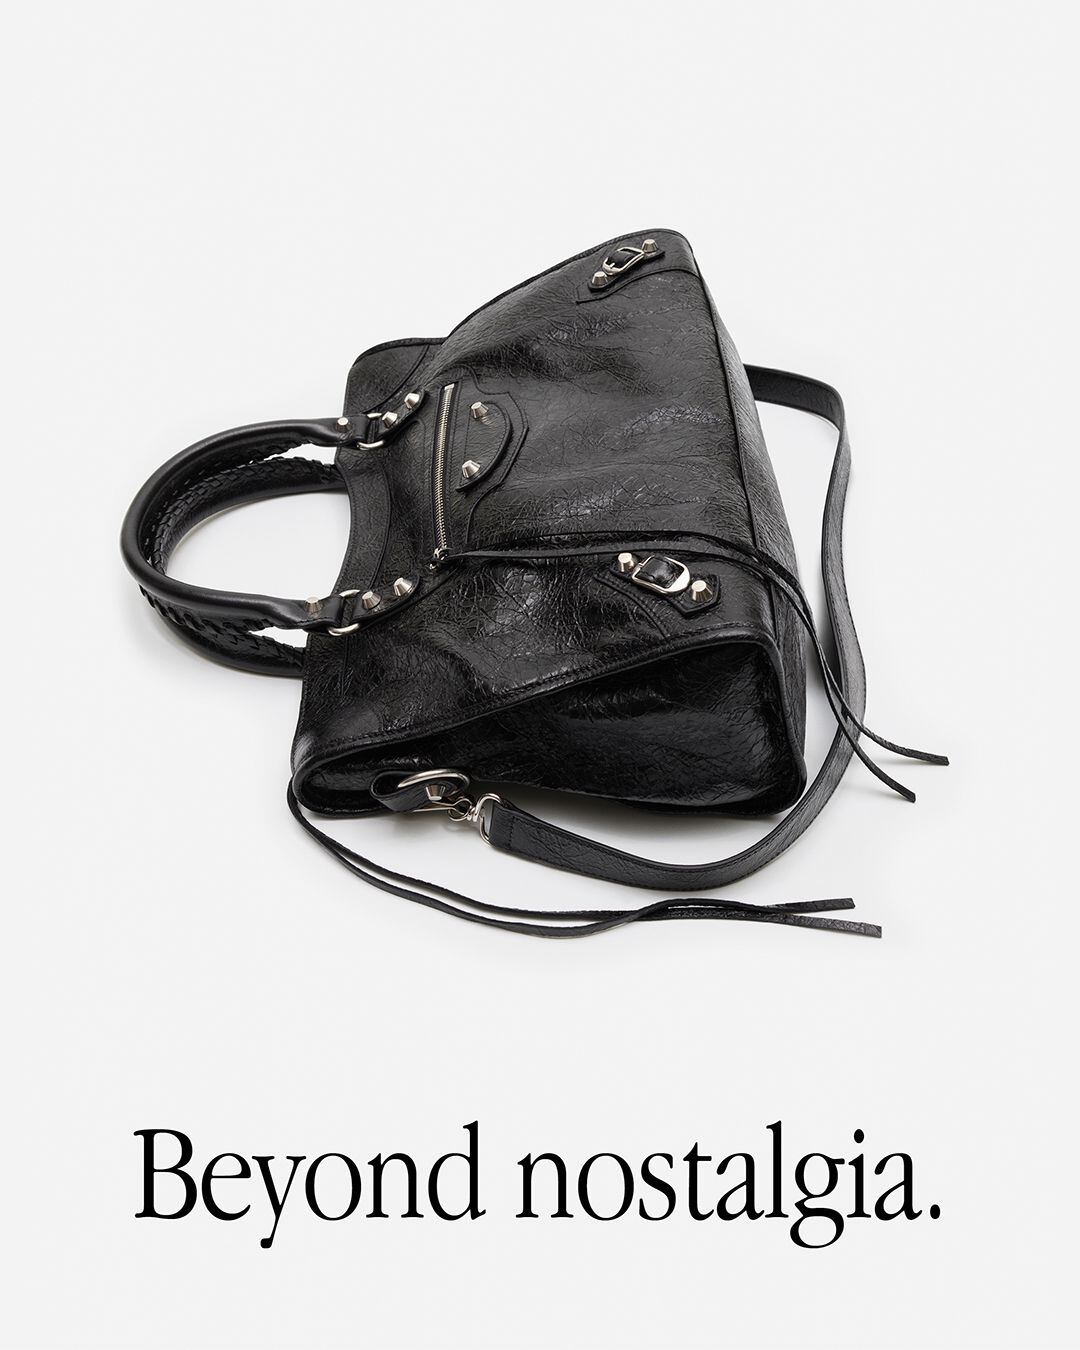 Campaña del nuevo Le City Bag de Balenciaga